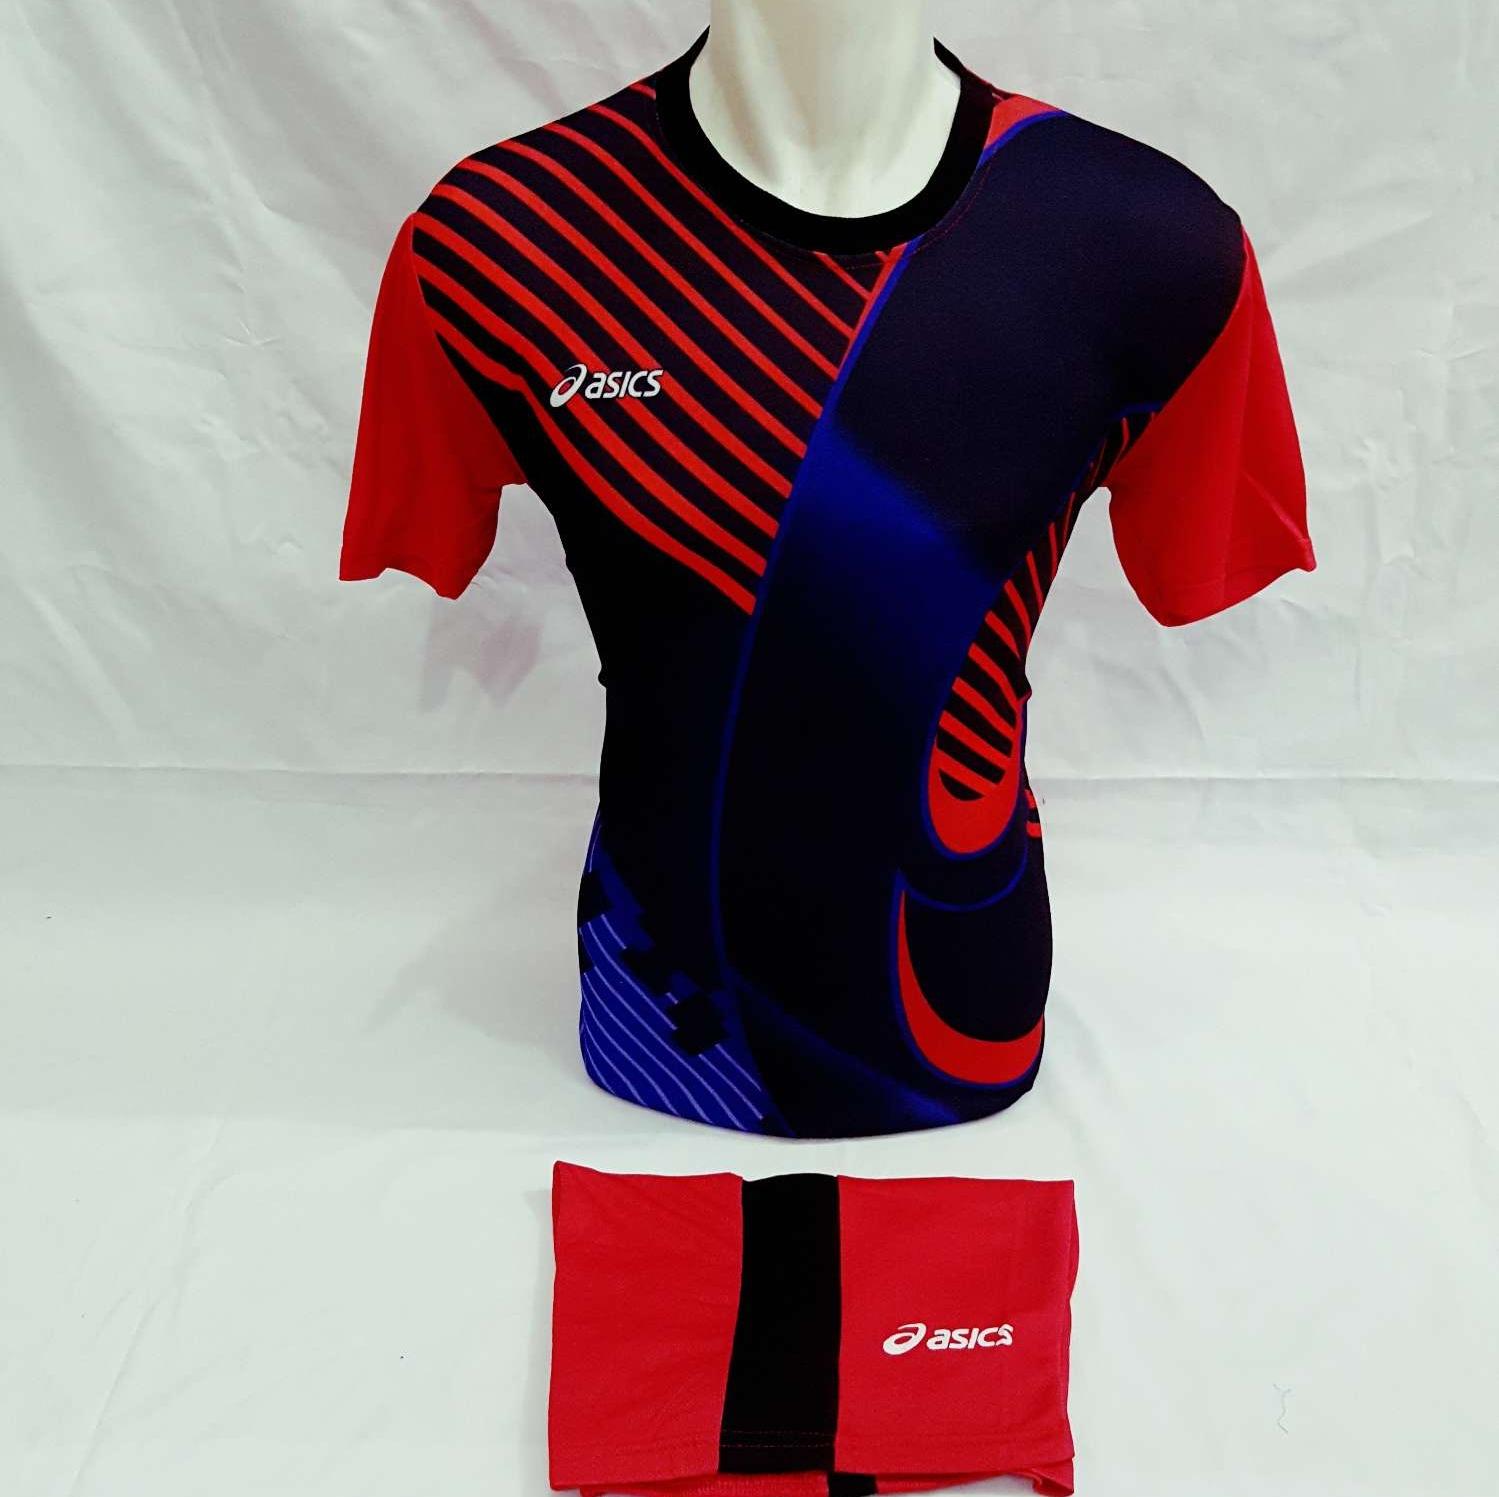 Download Desain Baju Futsal Specs Batik Depan Belakang - Inspirasi Desain Menarik